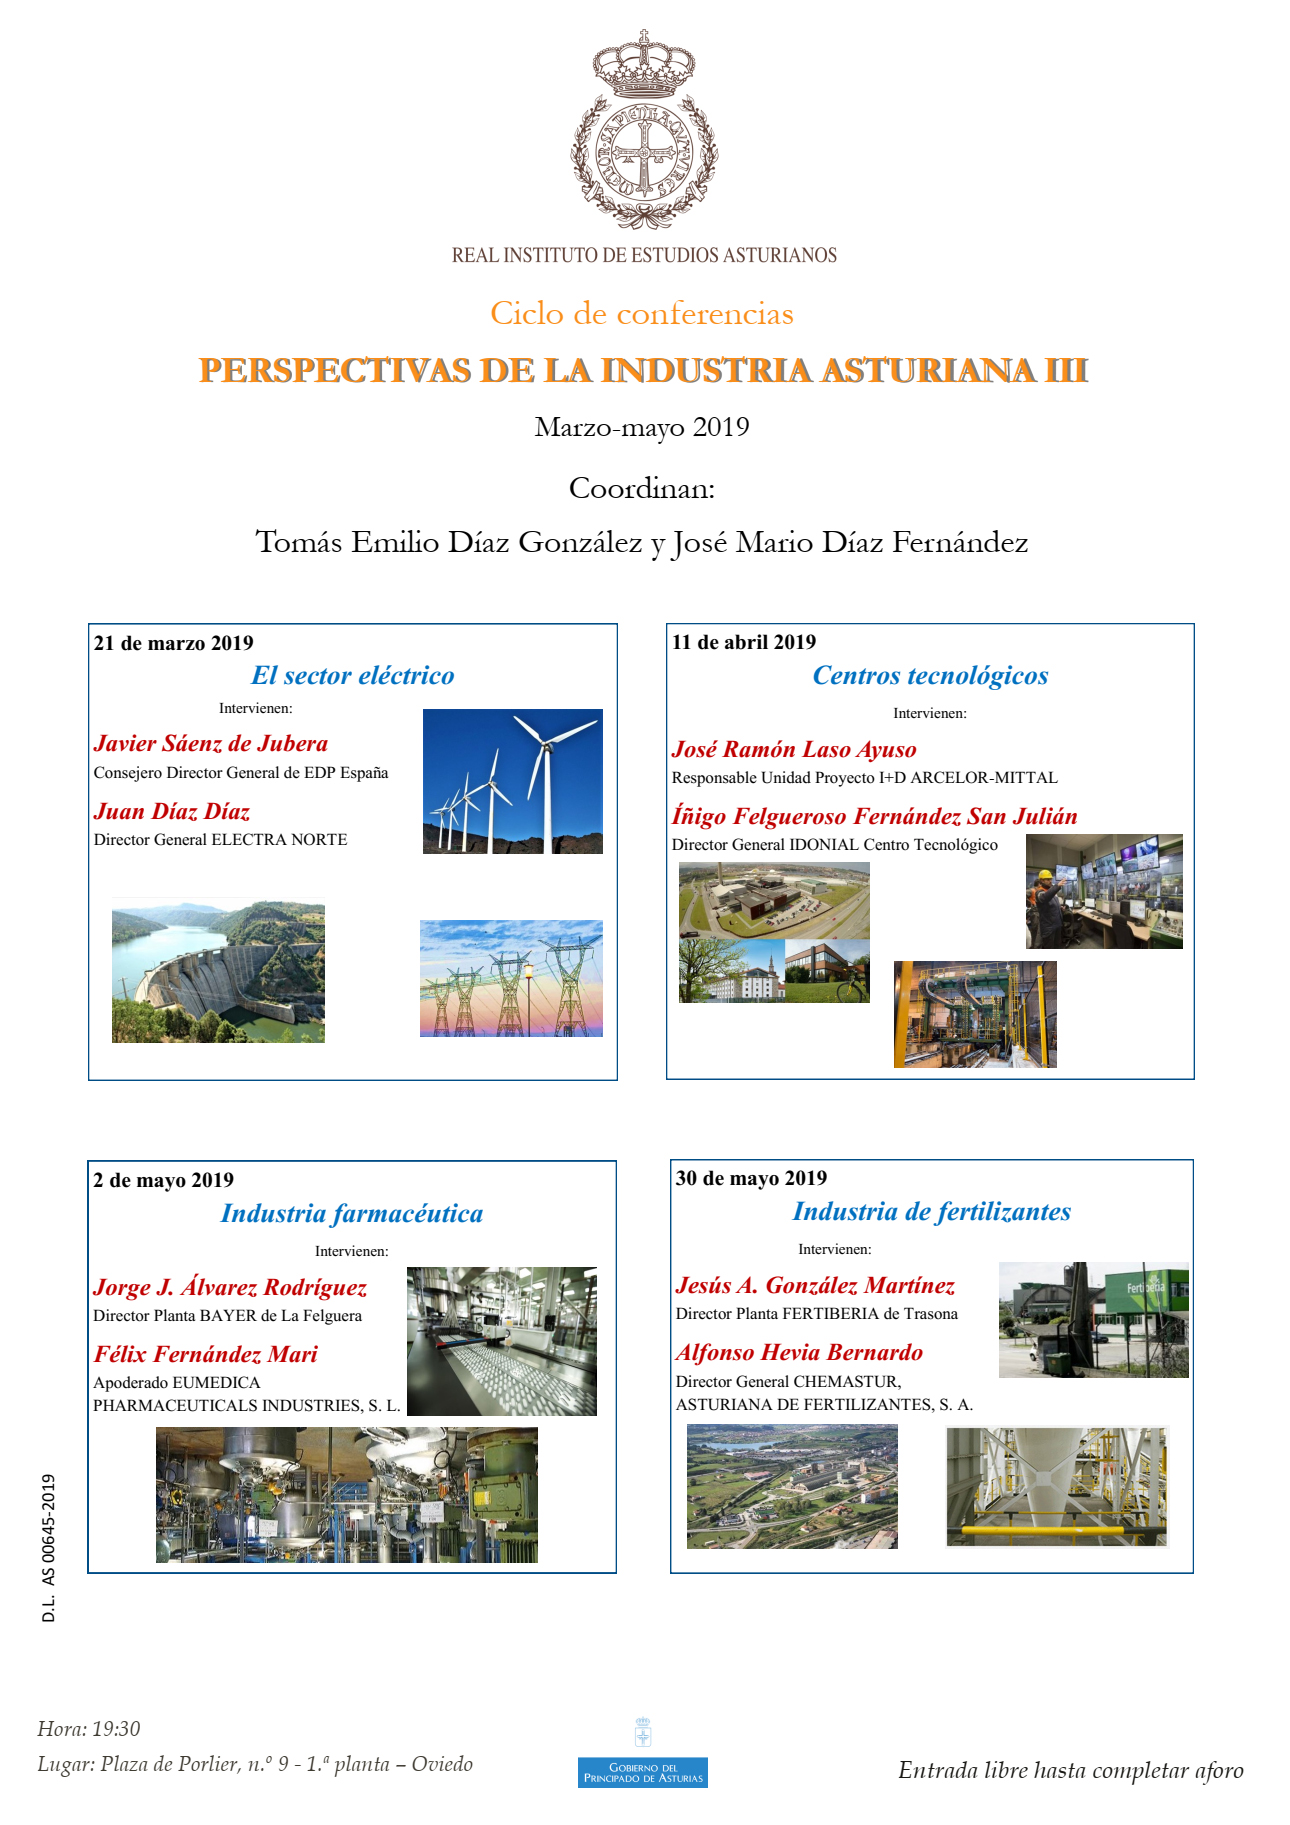 Imagen - Ciclo de conferencias: PERSPECTIVAS DE LA INDUSTRIA ASTURIANA III